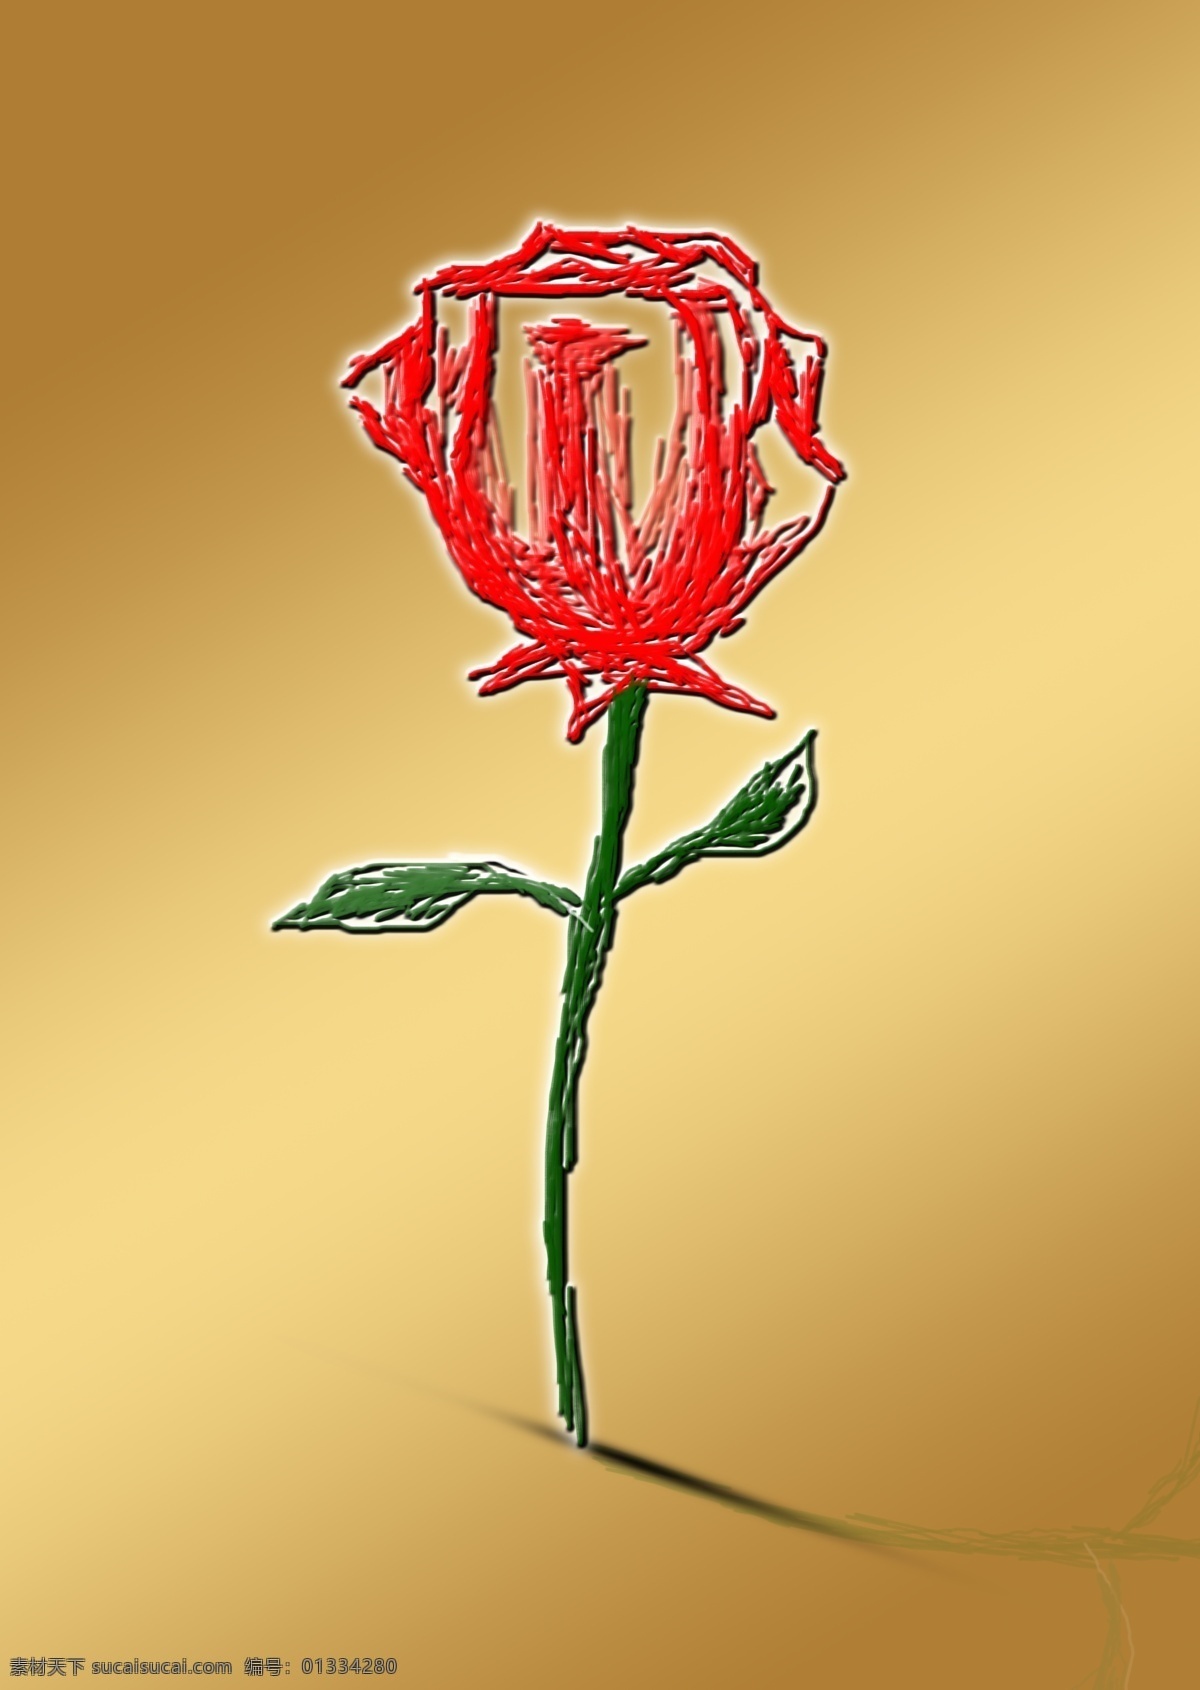 节日素材 玫瑰 情人 情人节 手绘 线稿 源文件 装饰 张 模板下载 一张手绘玫瑰 psd源文件